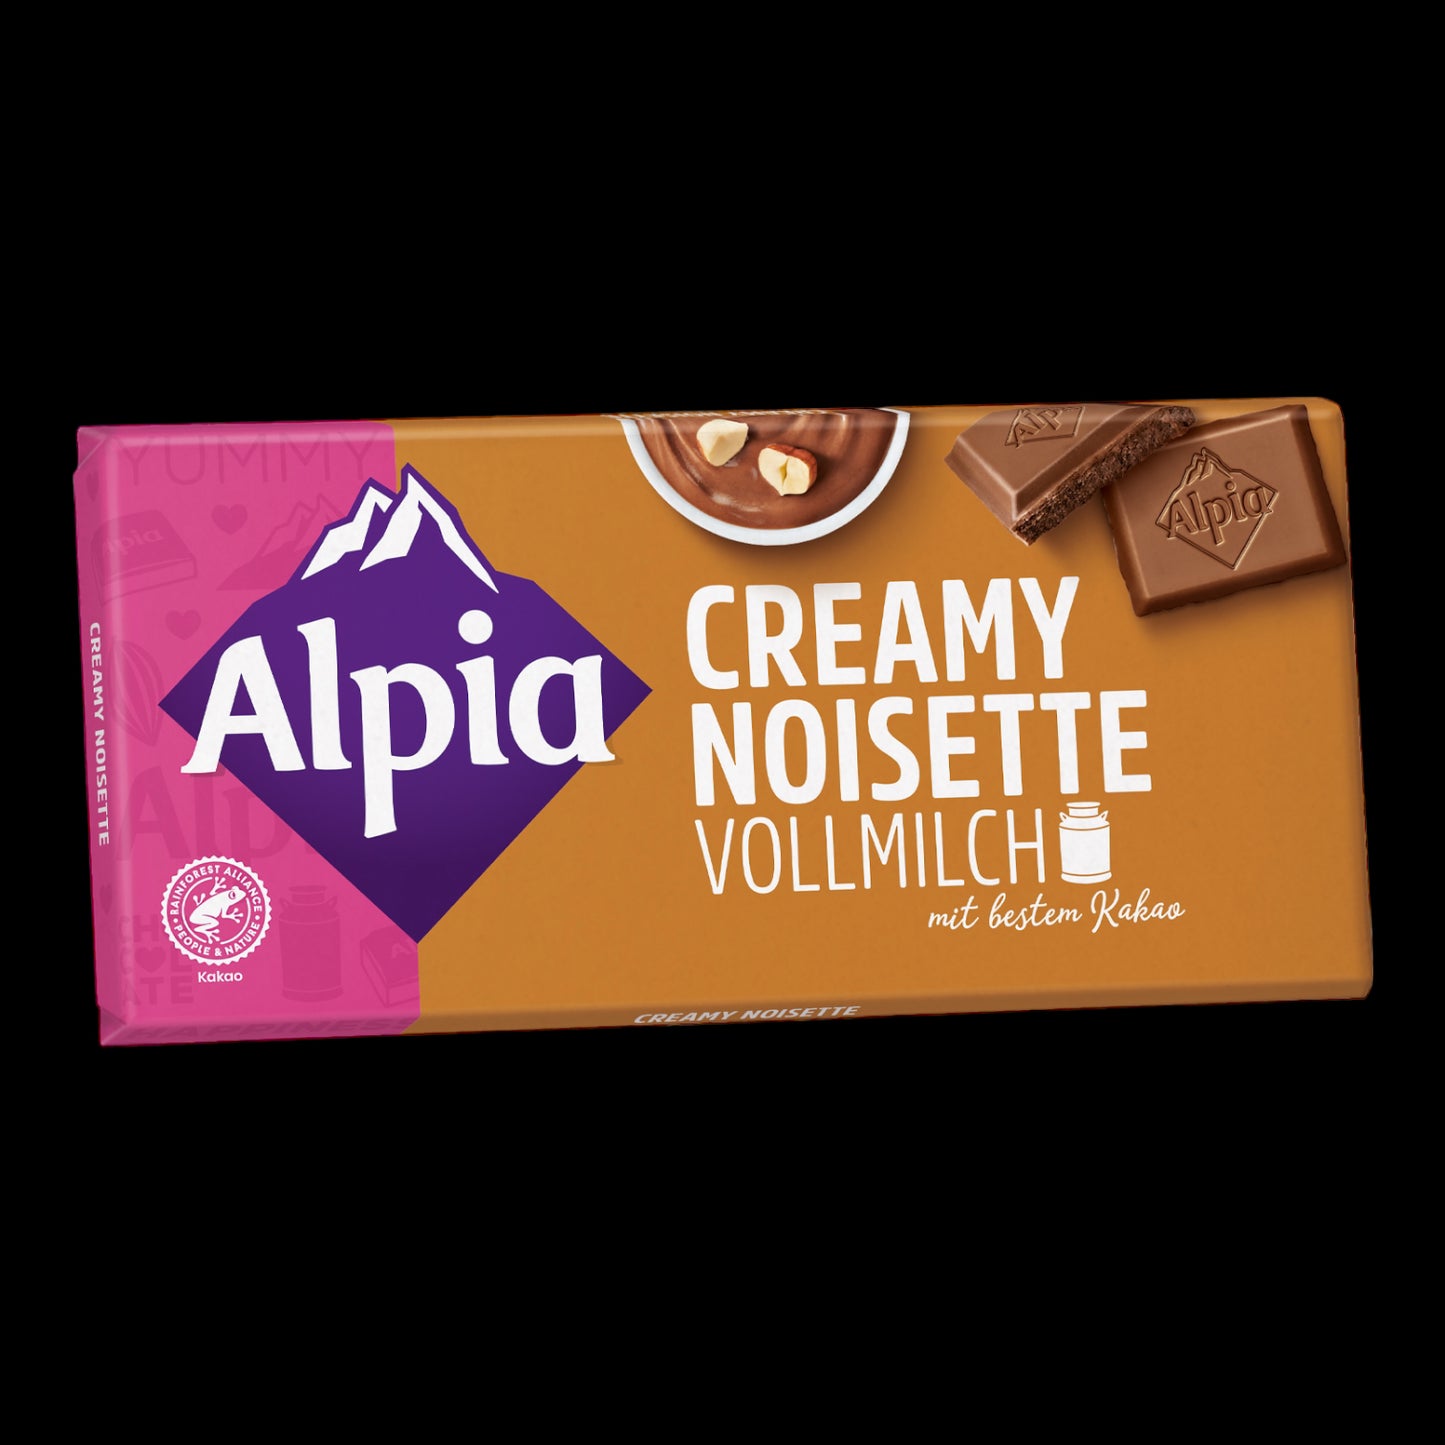 Alpia Creamy Noisette Vollmilch 100g